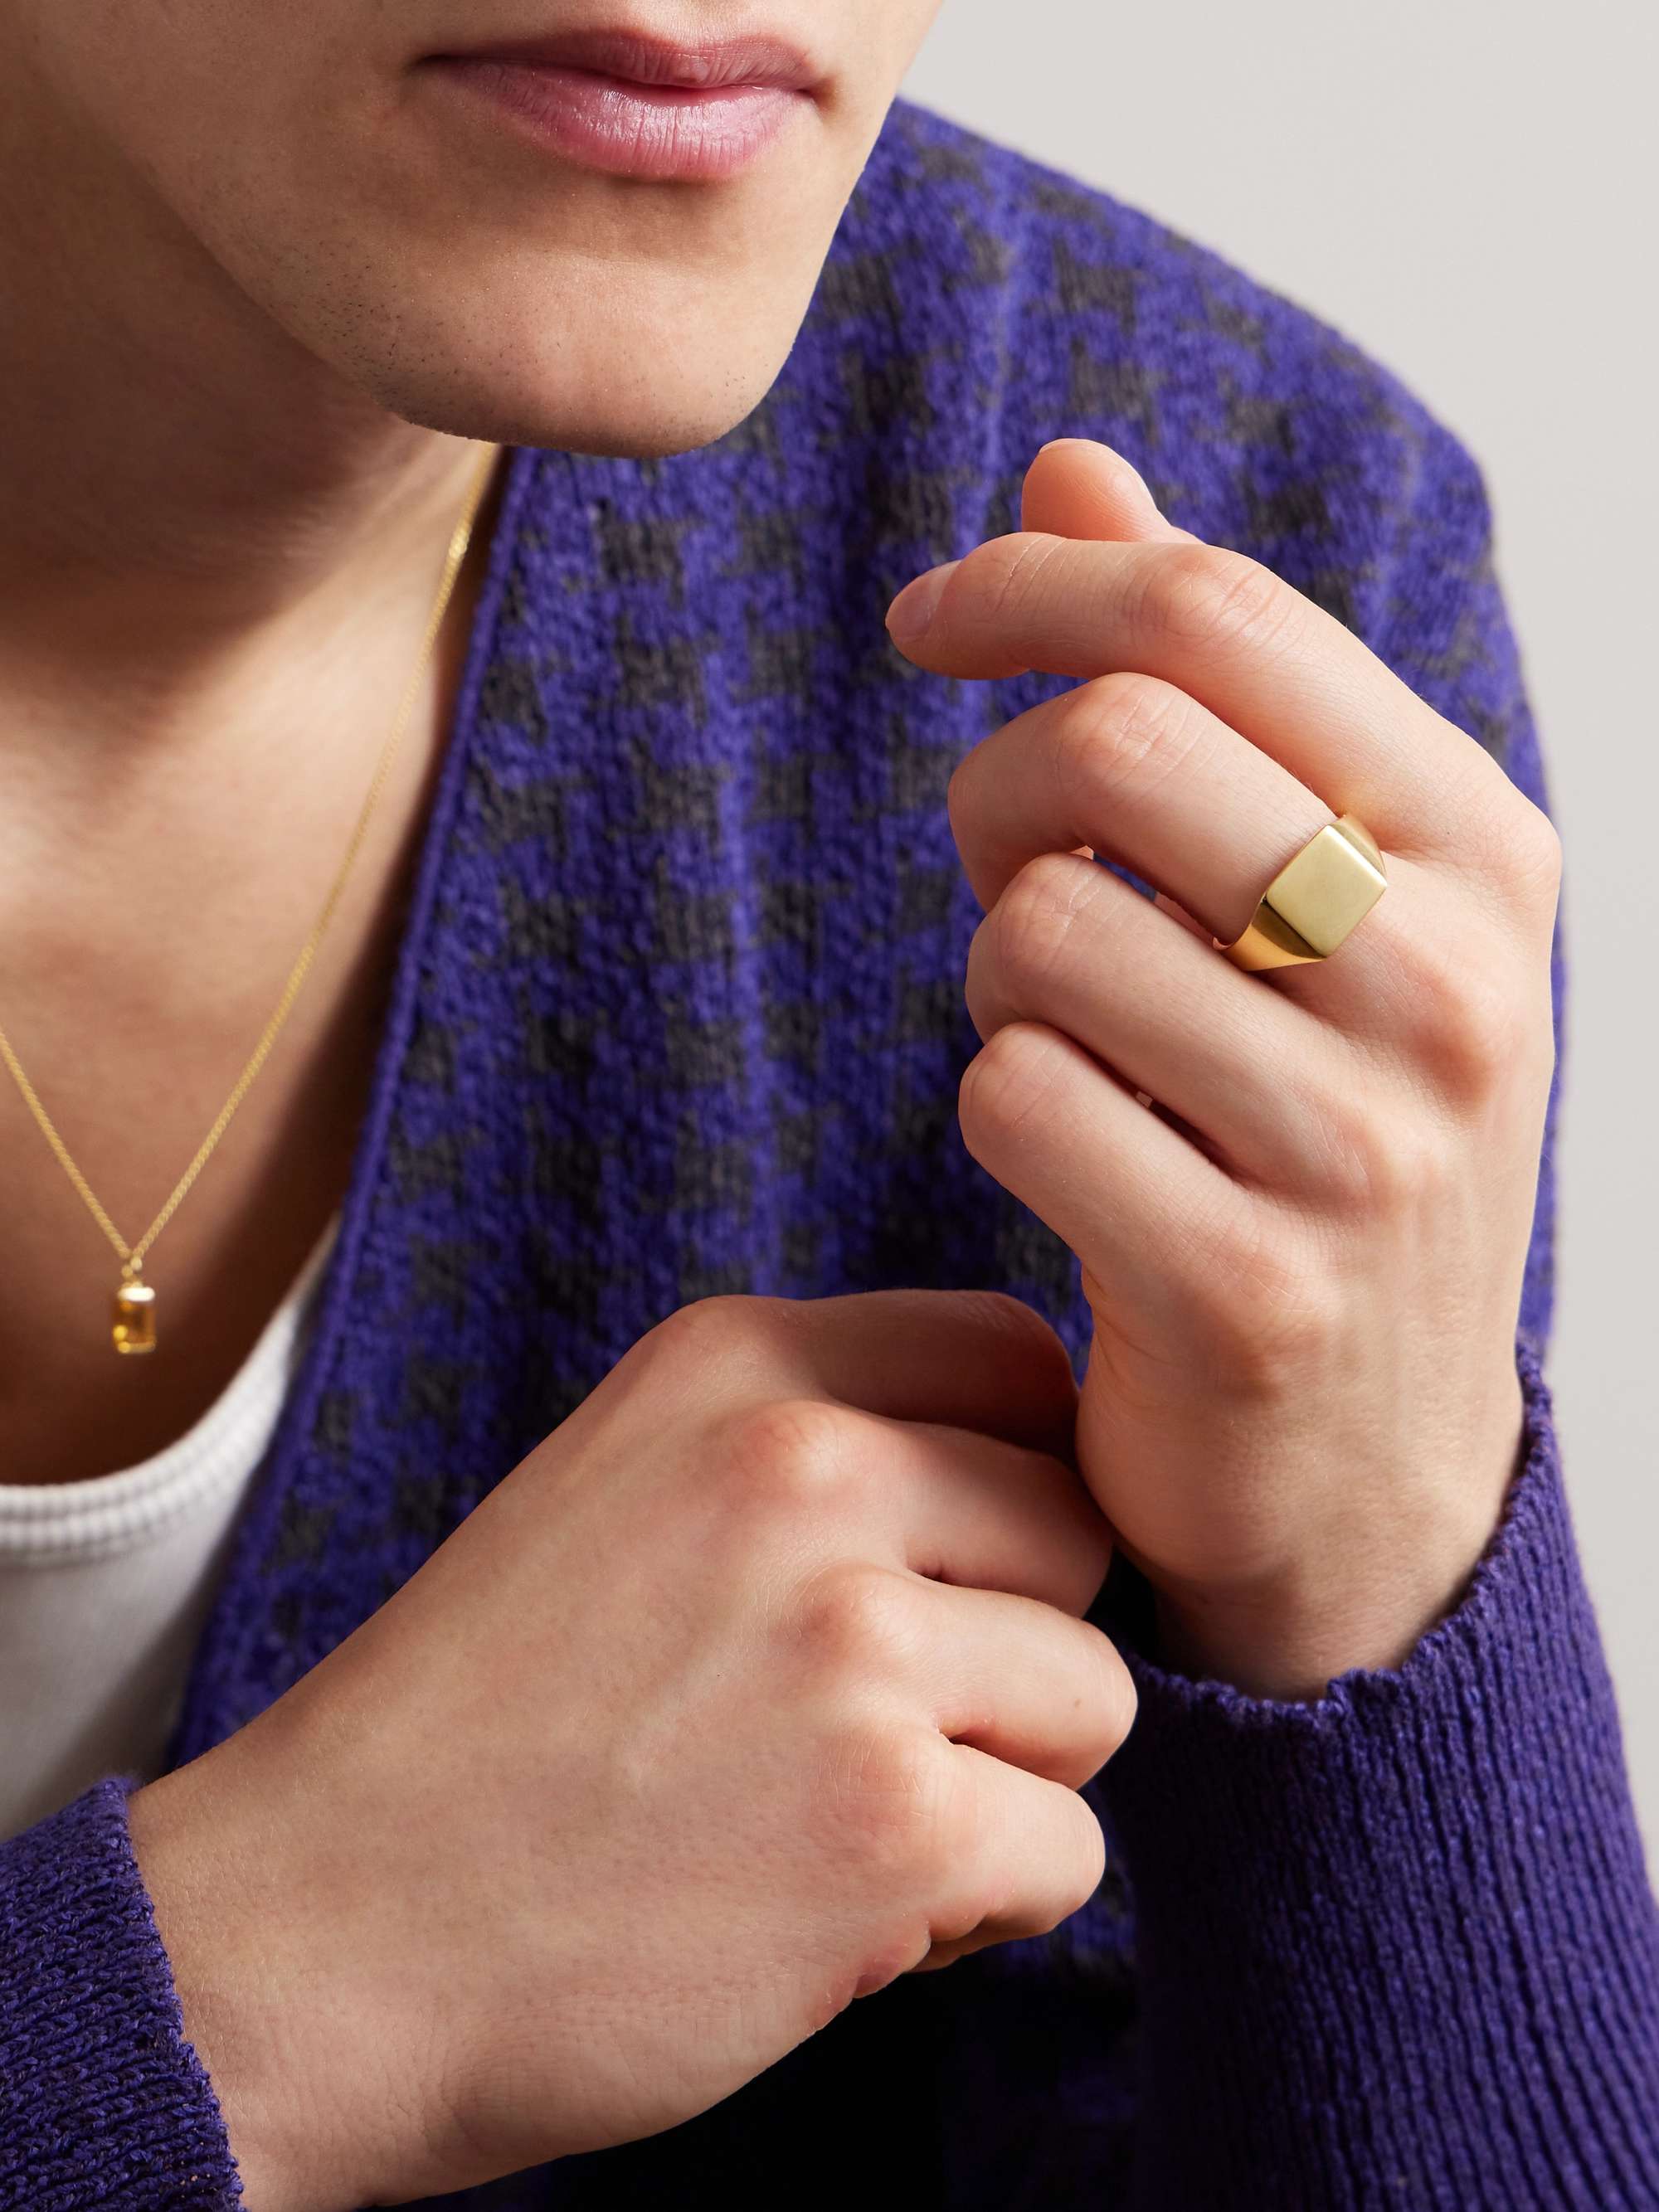 MIANSAI Gold Vermeil Signet Ring for Men | MR PORTER